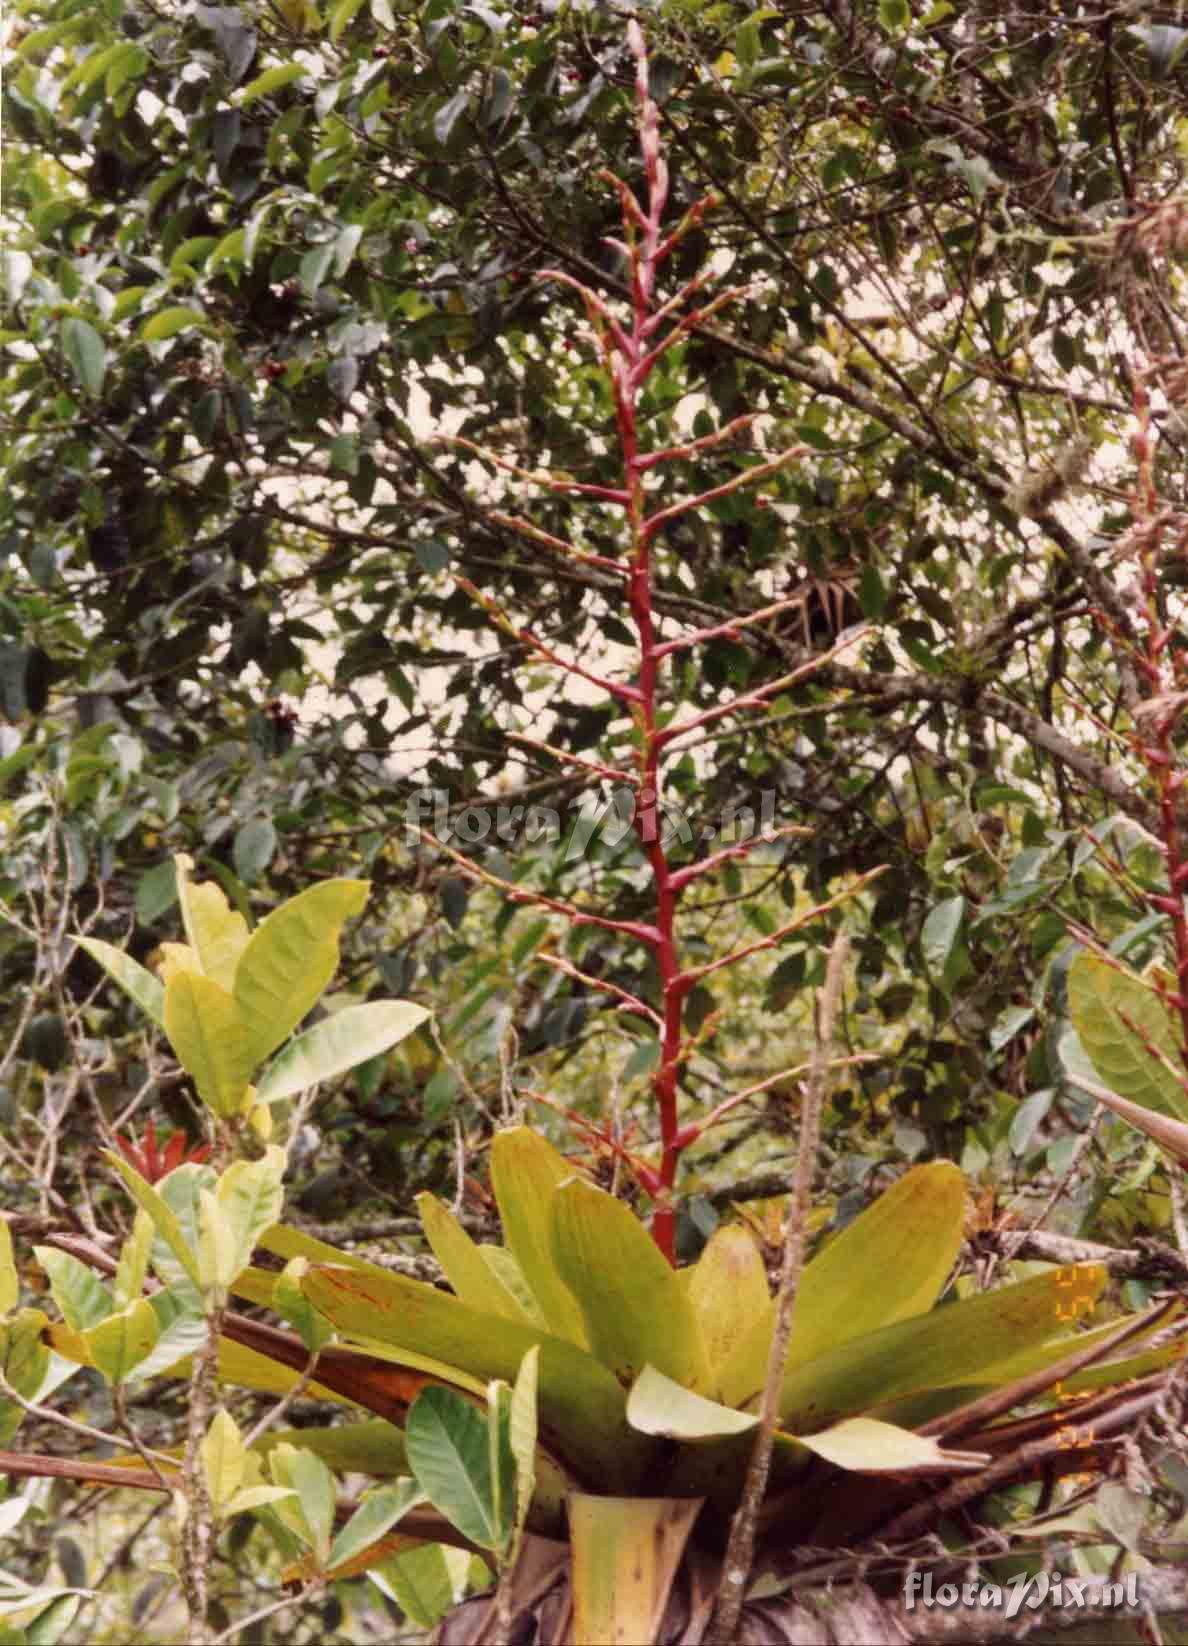 Tillandsia maculata